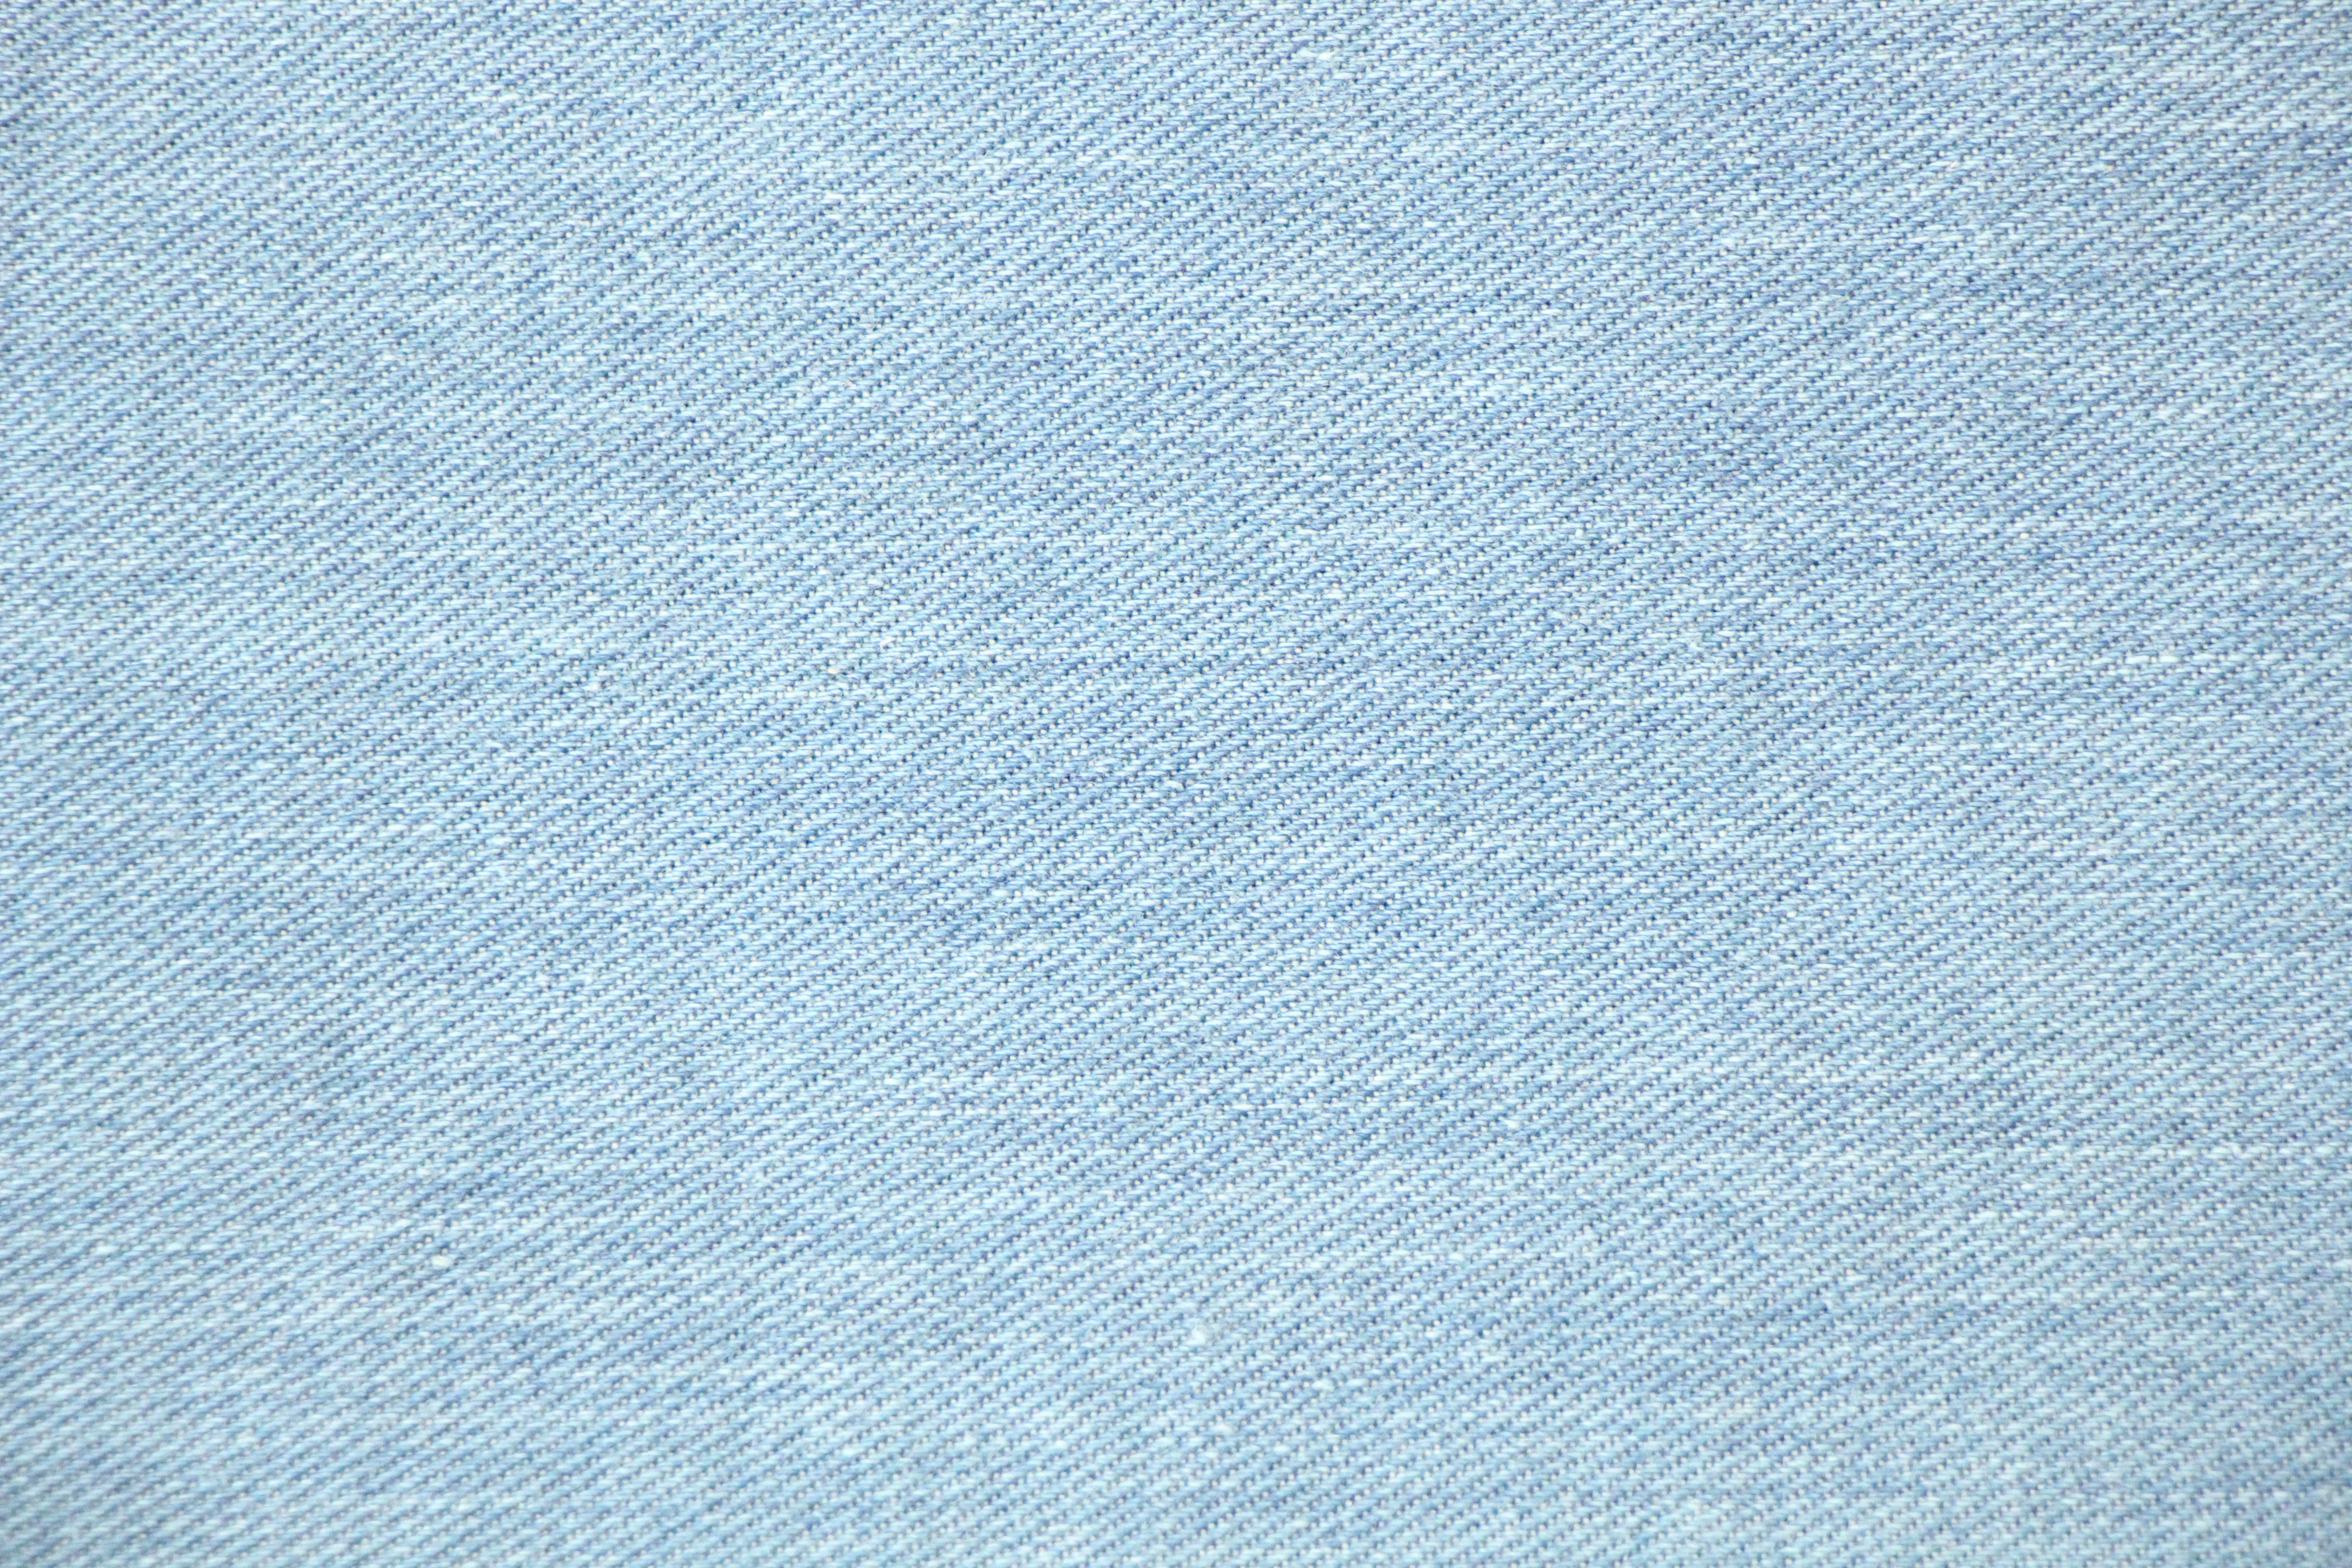 Airbus Arctic Blue ткань